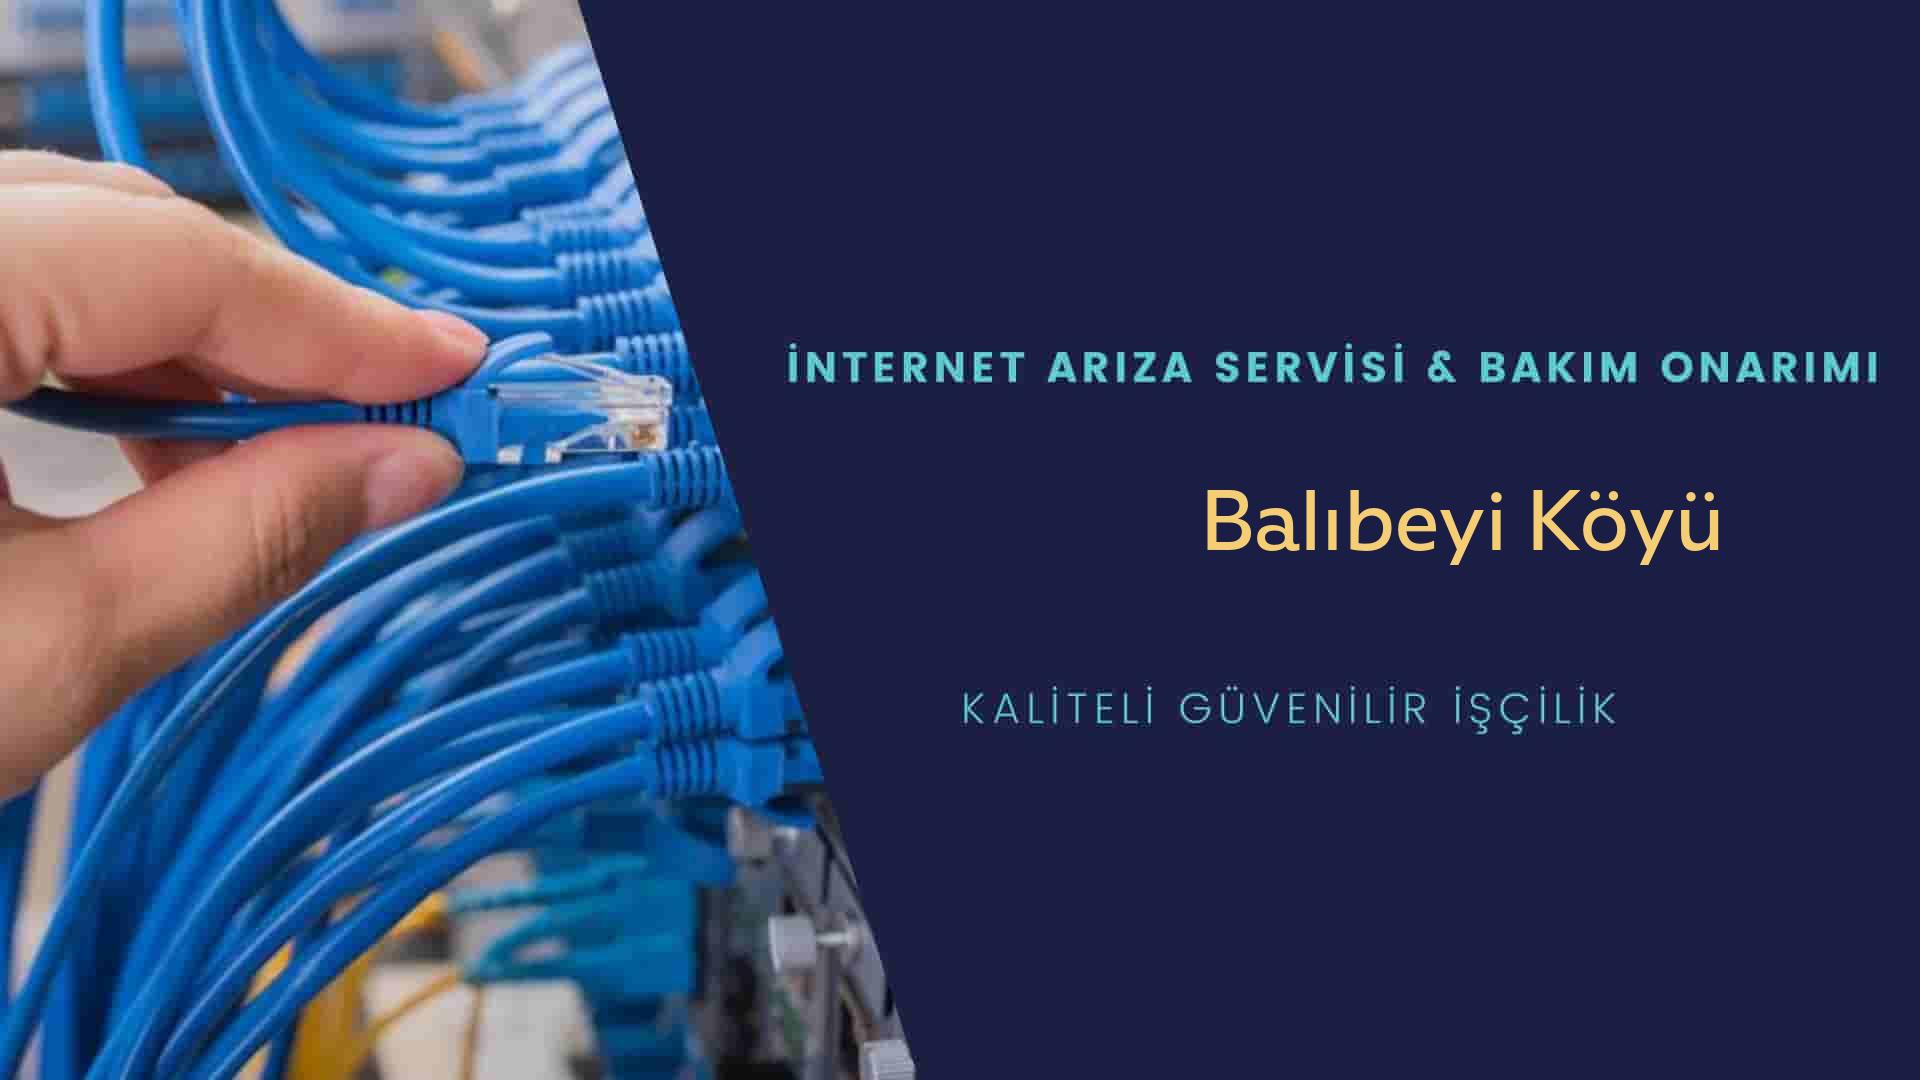 Balıbeyi Köyü internet kablosu çekimi yapan yerler veya elektrikçiler mi? arıyorsunuz doğru yerdesiniz o zaman sizlere 7/24 yardımcı olacak profesyonel ustalarımız bir telefon kadar yakındır size.